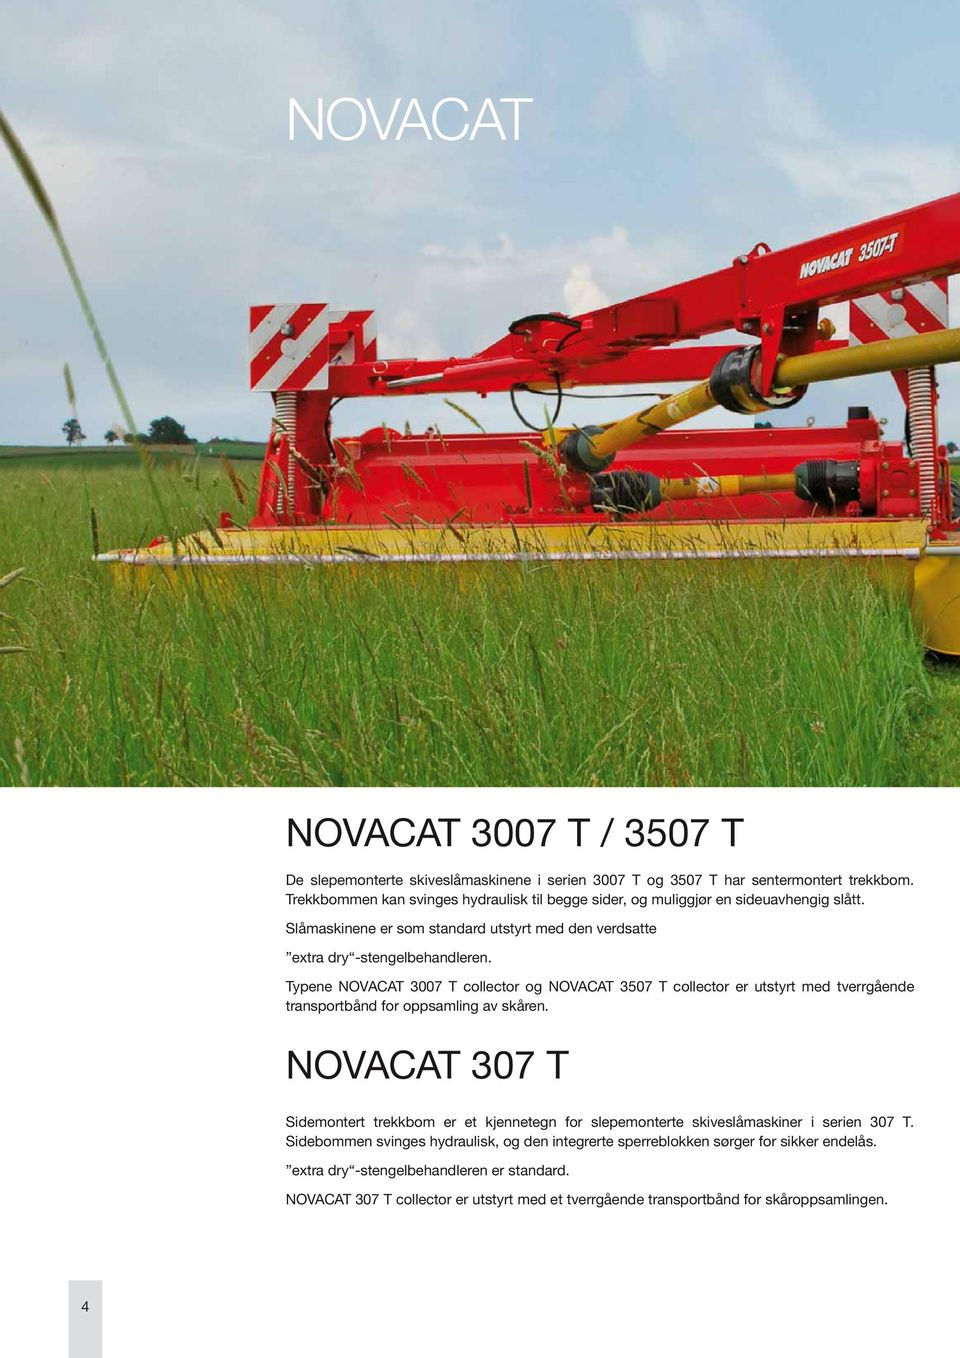 Typene NOVACAT 3007 T collector og NOVACAT 3507 T collector er utstyrt med tverrgående transportbånd for oppsamling av skåren.